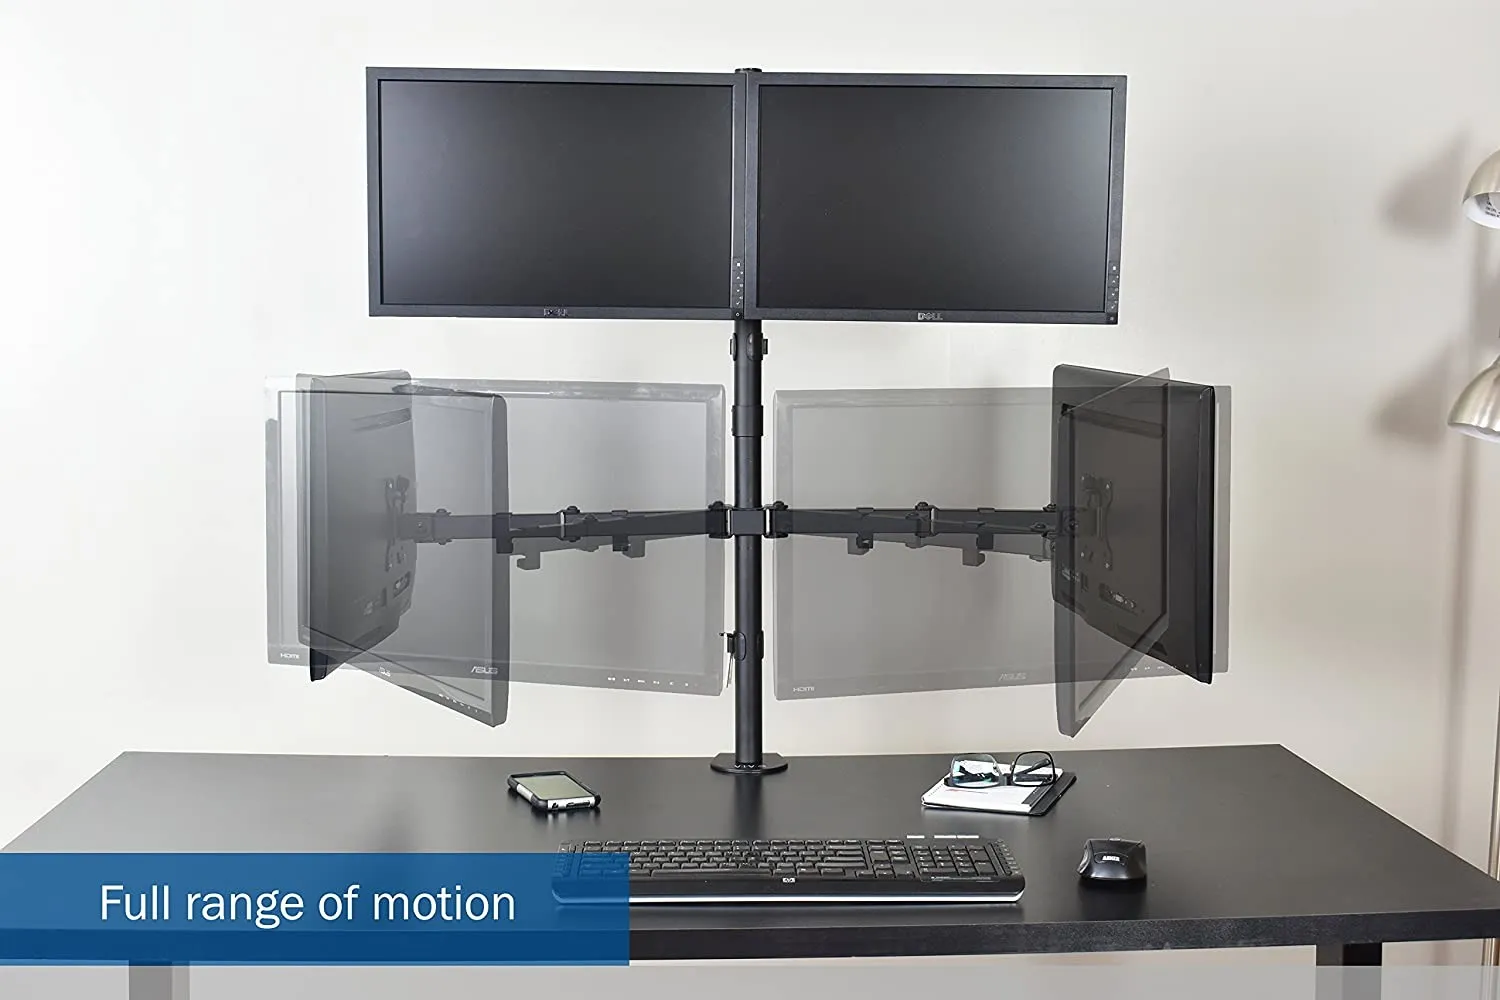  Mount-It! Soporte para monitor cuádruple, altura ajustable,  soporte de 4 pantallas, Se adapta a monitores de hasta 32 pulgadas, Negro, Acero